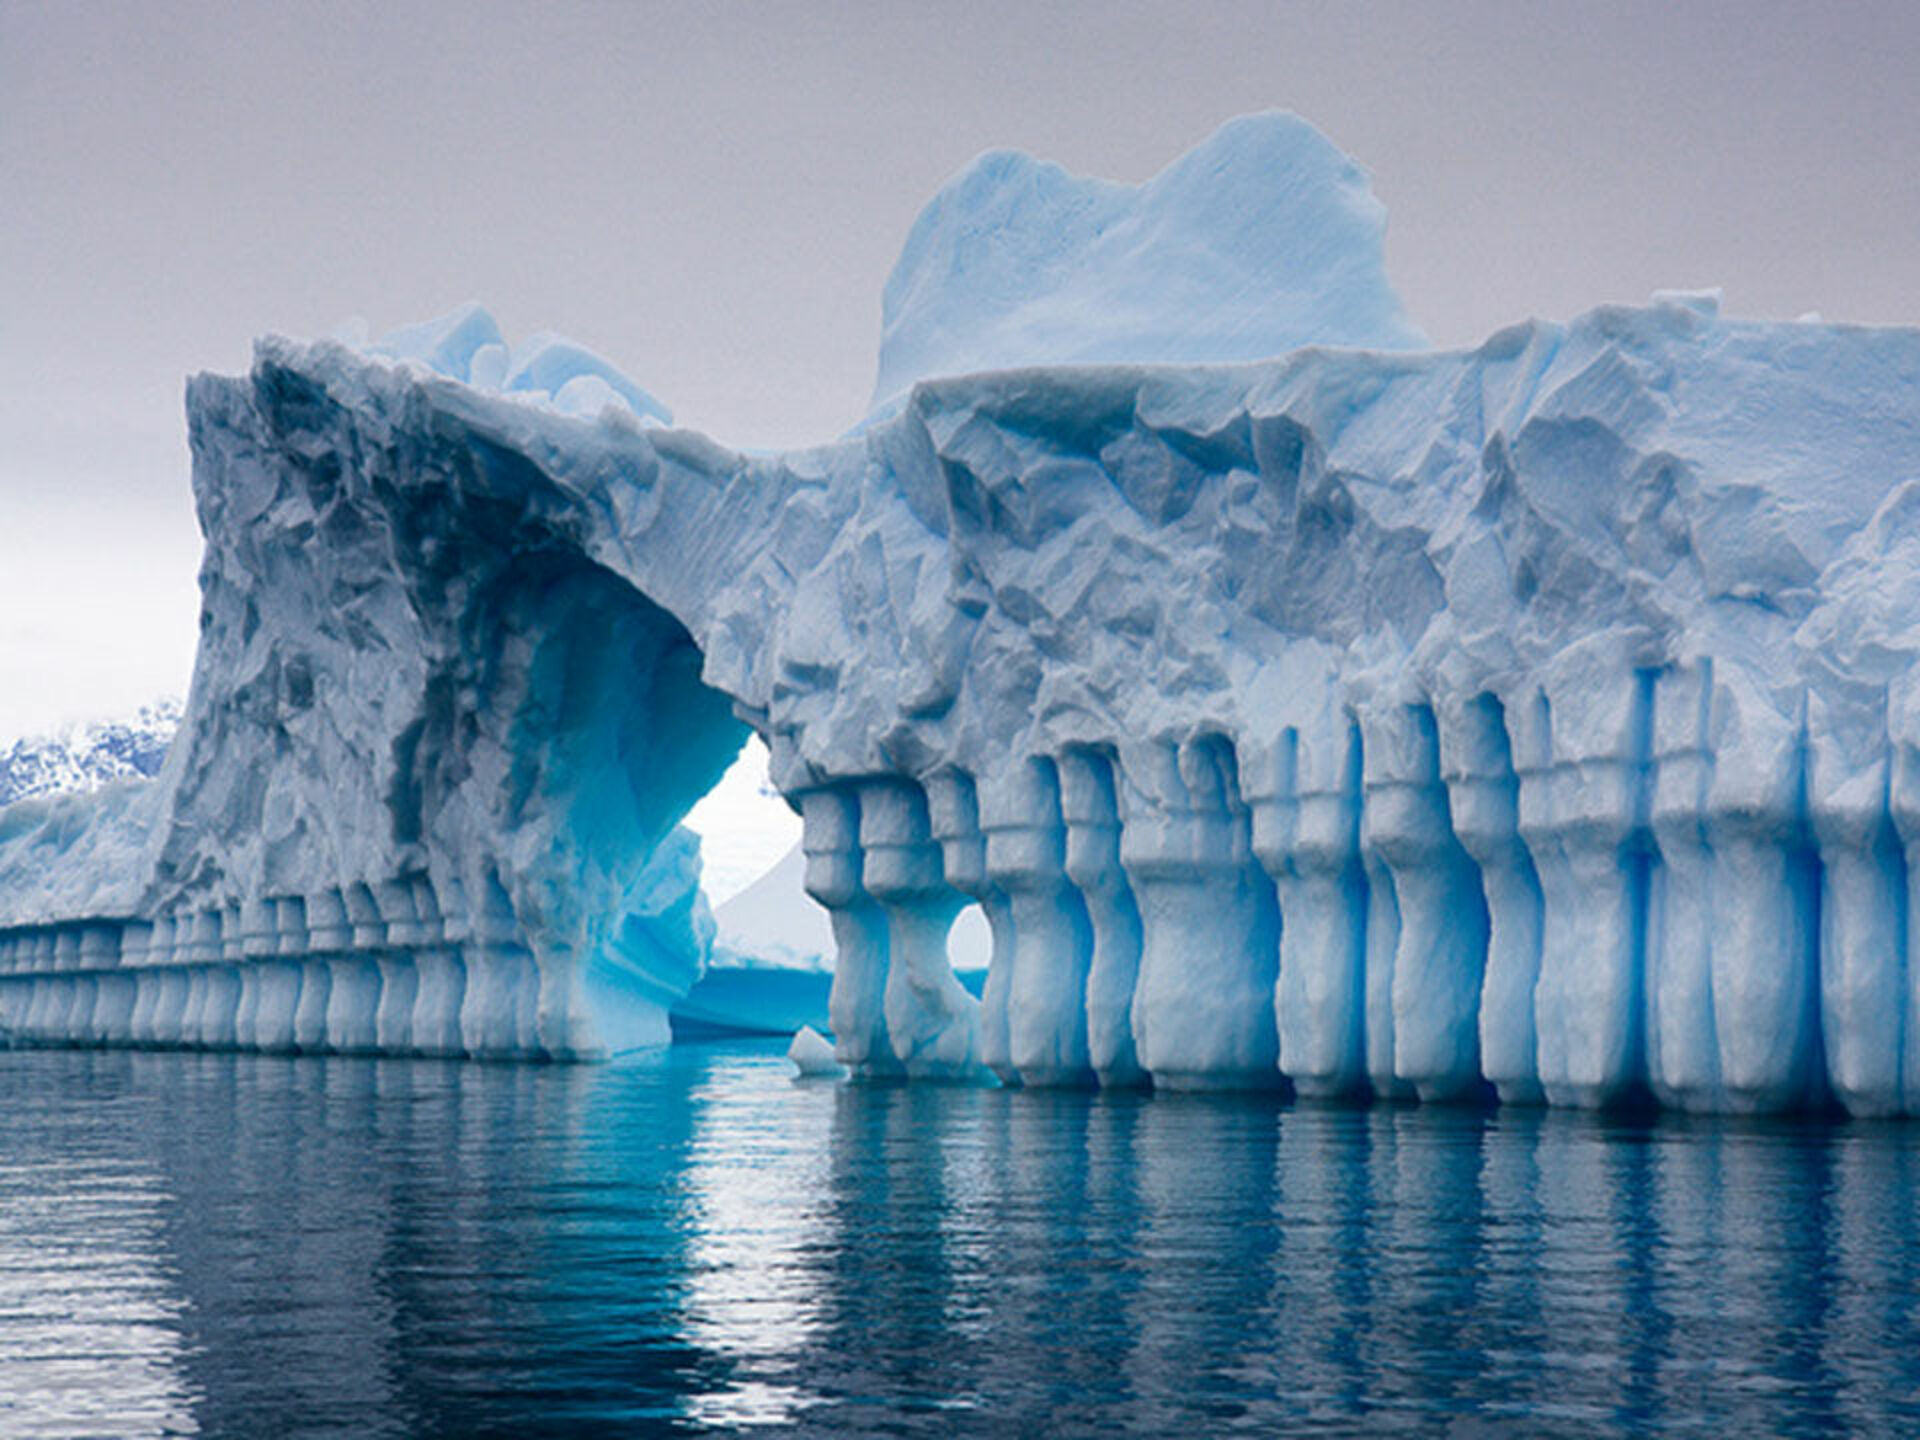 Антарктическое государство. Ледник Плено в Антарктиде. Льды Антарктики. Ледник Плено – природный шедевр архитектуры в Антарктиде.. Антарктида (материк) айсберги.